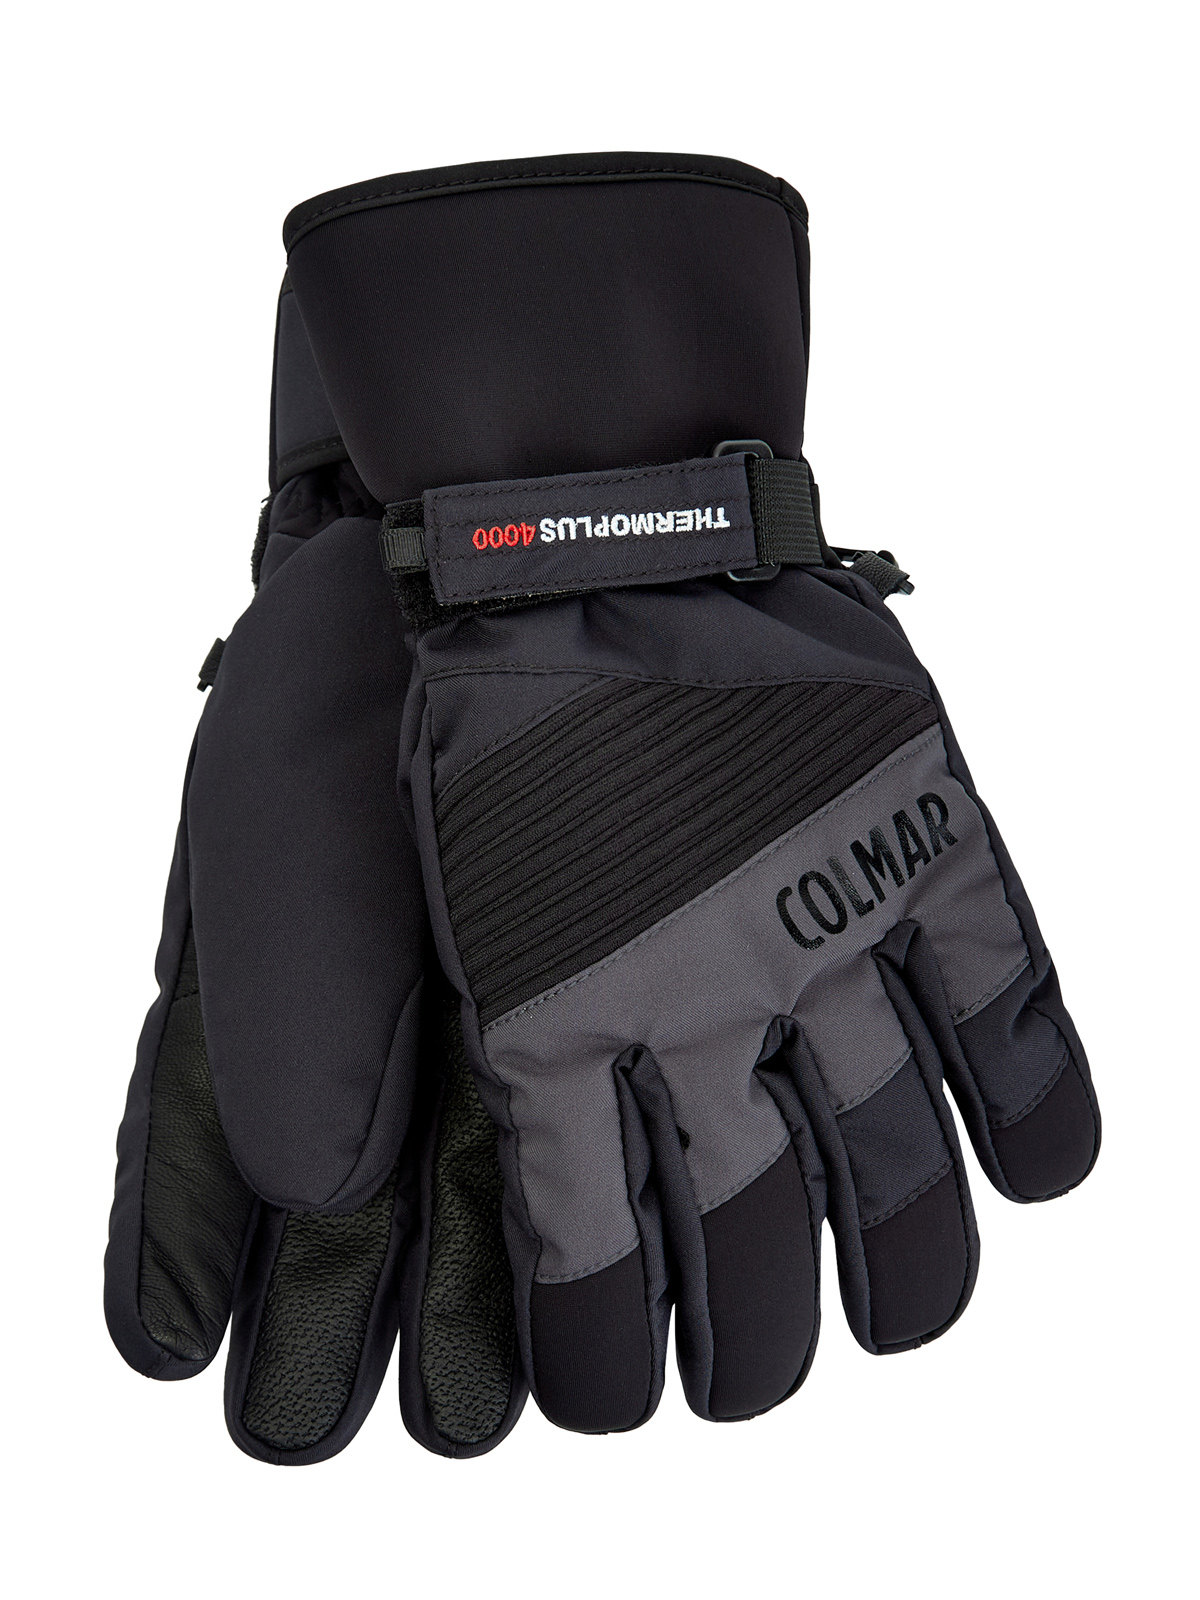 Утепленные перчатки с термозащитой thermo-plus и кожаными вставками